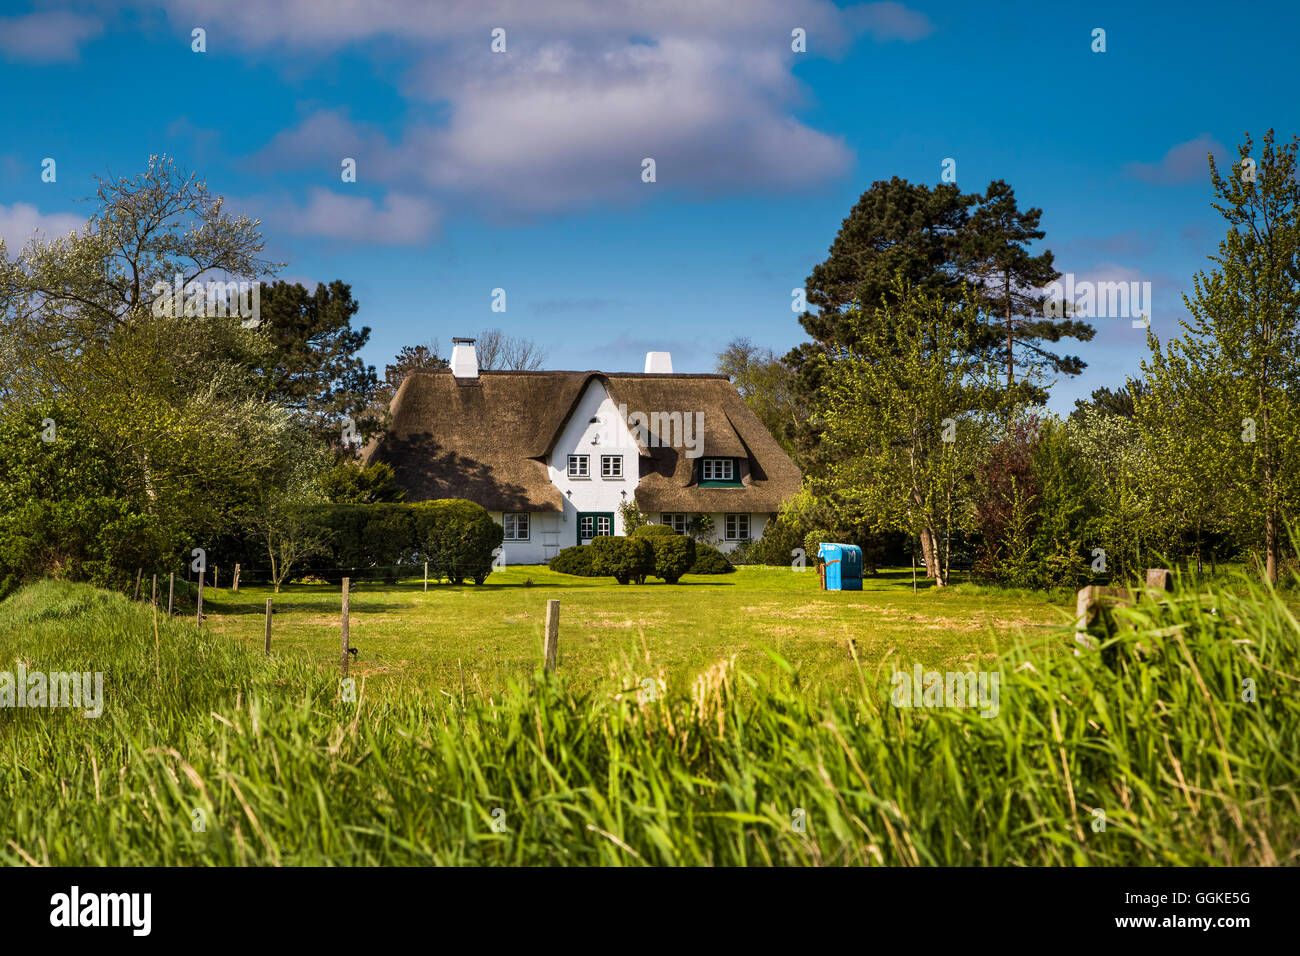 Maison de chaume, Nebel, Amrum Island, au nord de l'archipel Frison, Schleswig-Holstein, Allemagne Banque D'Images